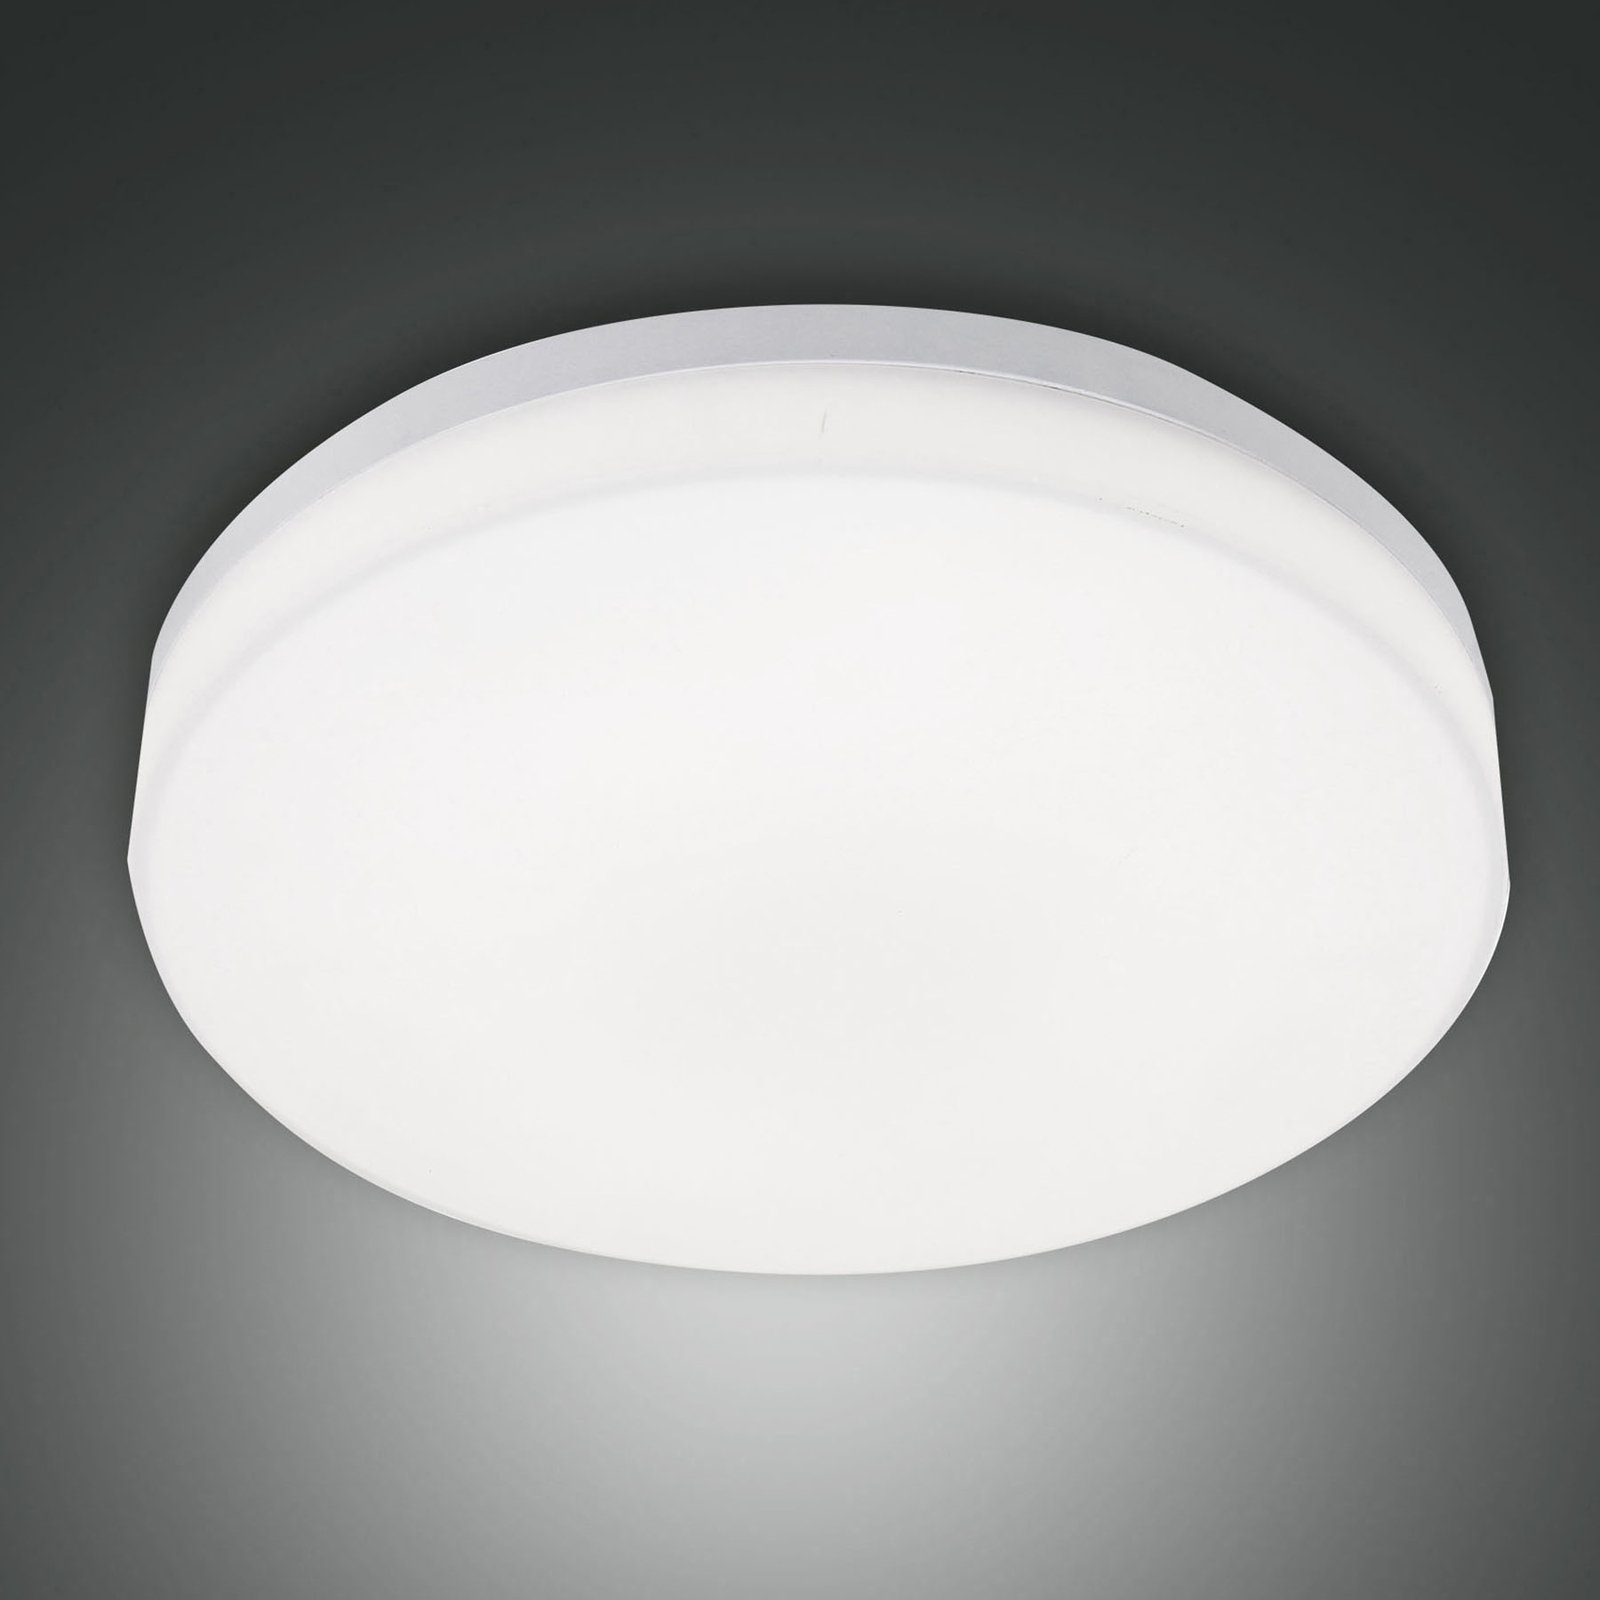 Lampa sufitowa zewnętrzna LED Trigo, biała